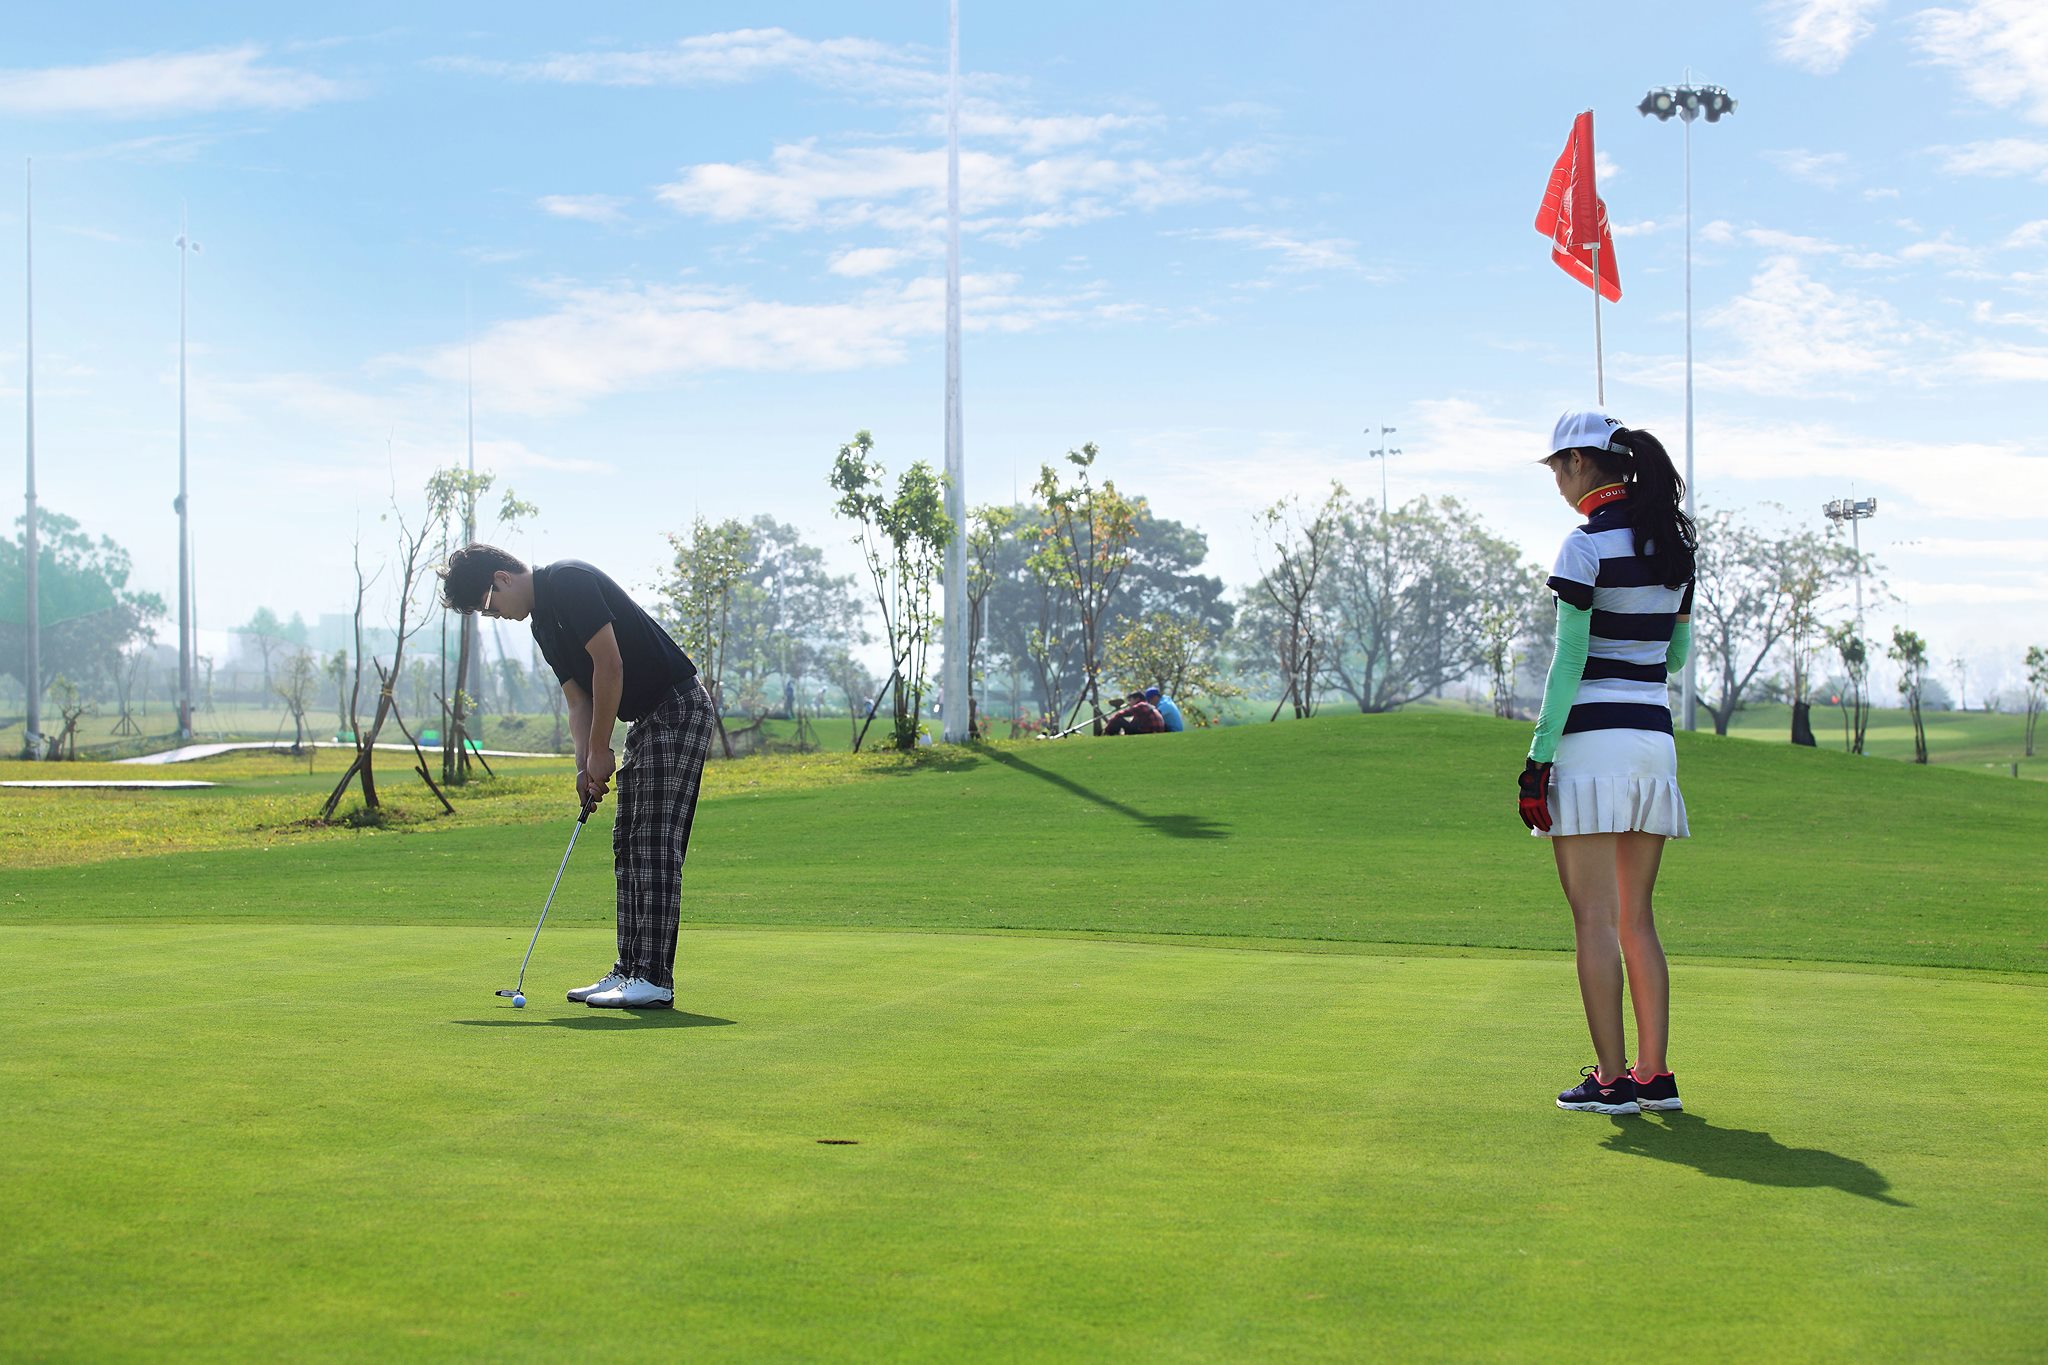 Sân tập golf Hà Đông với mặt cỏ được chăm sóc kỹ lưỡng